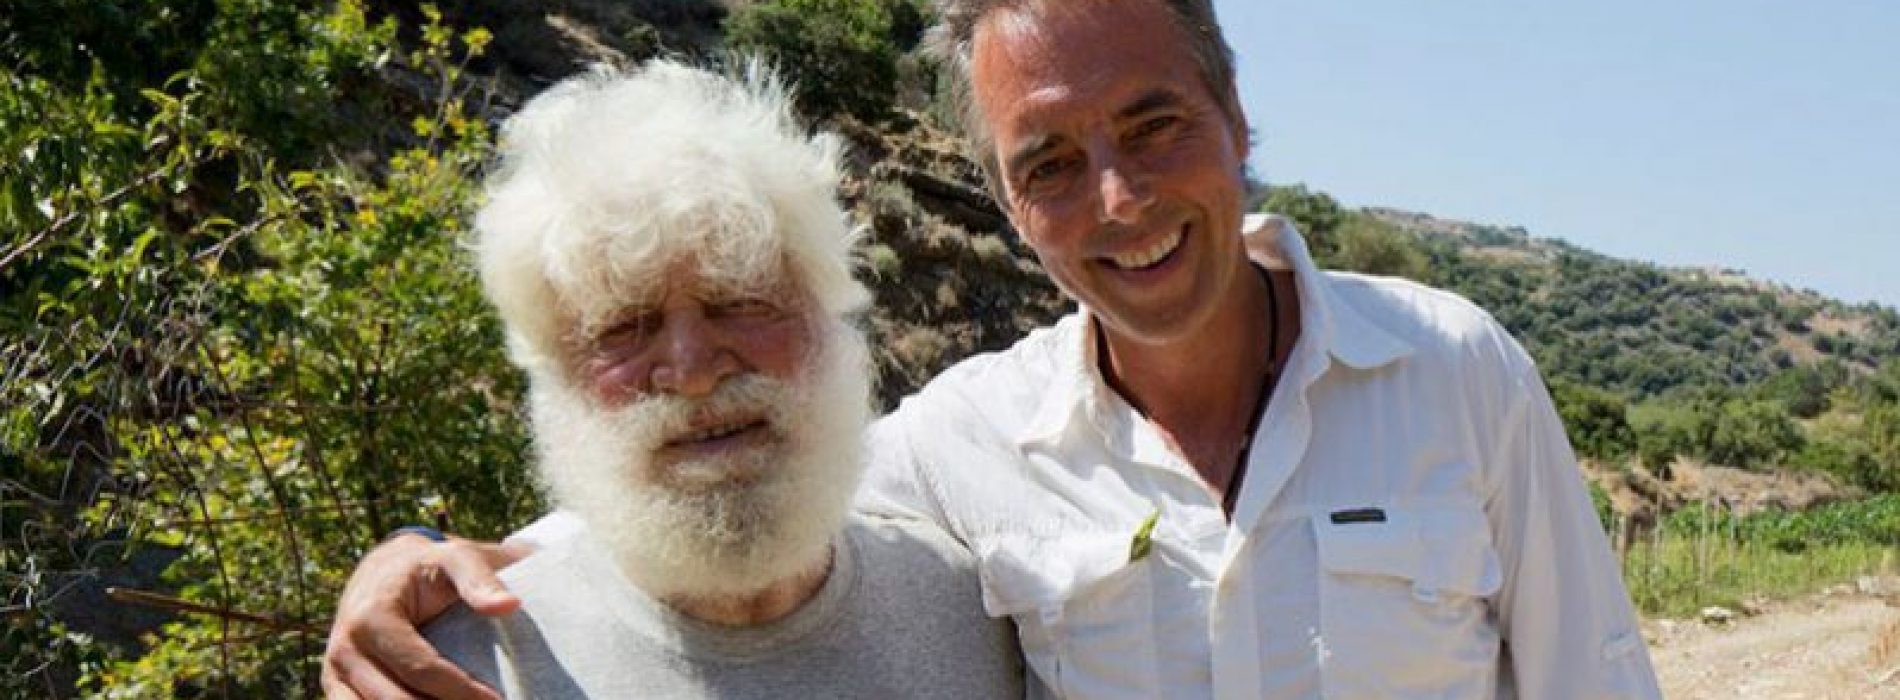 Hoe deze Griekse eilandbewoners dementie kunnen voorkomen